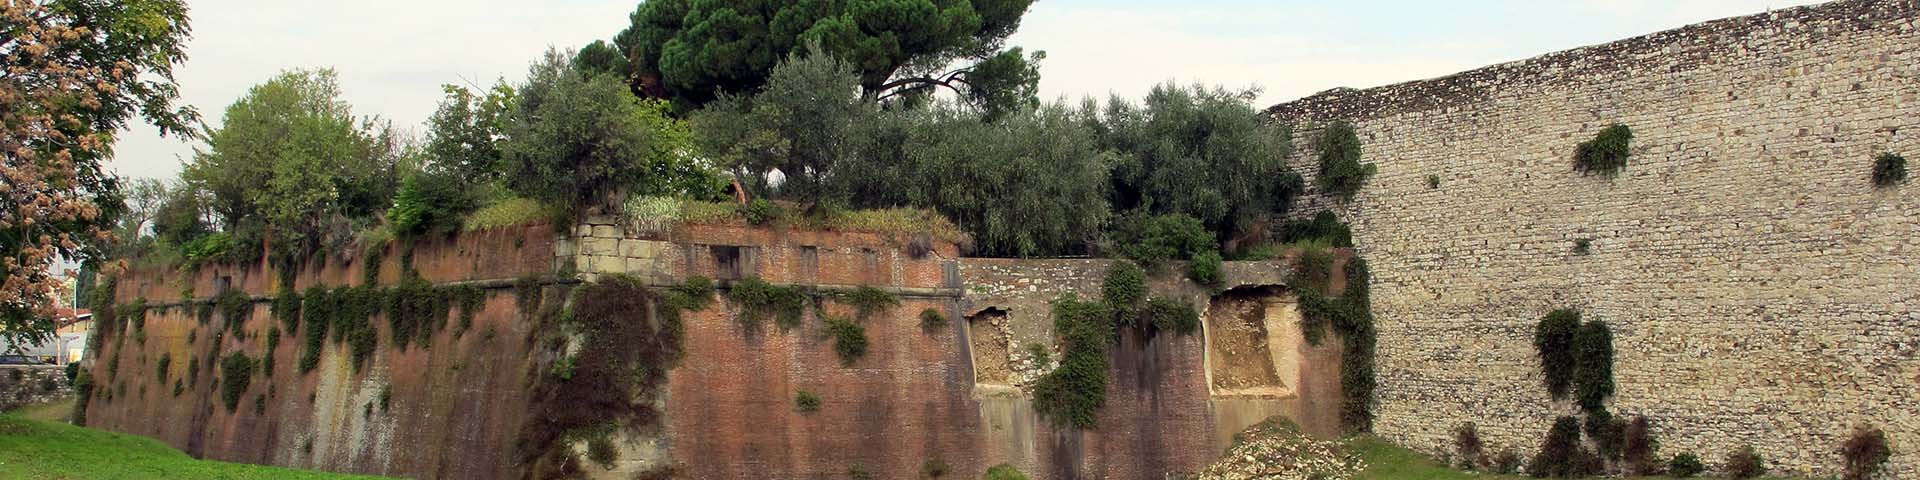 Mura di Prato